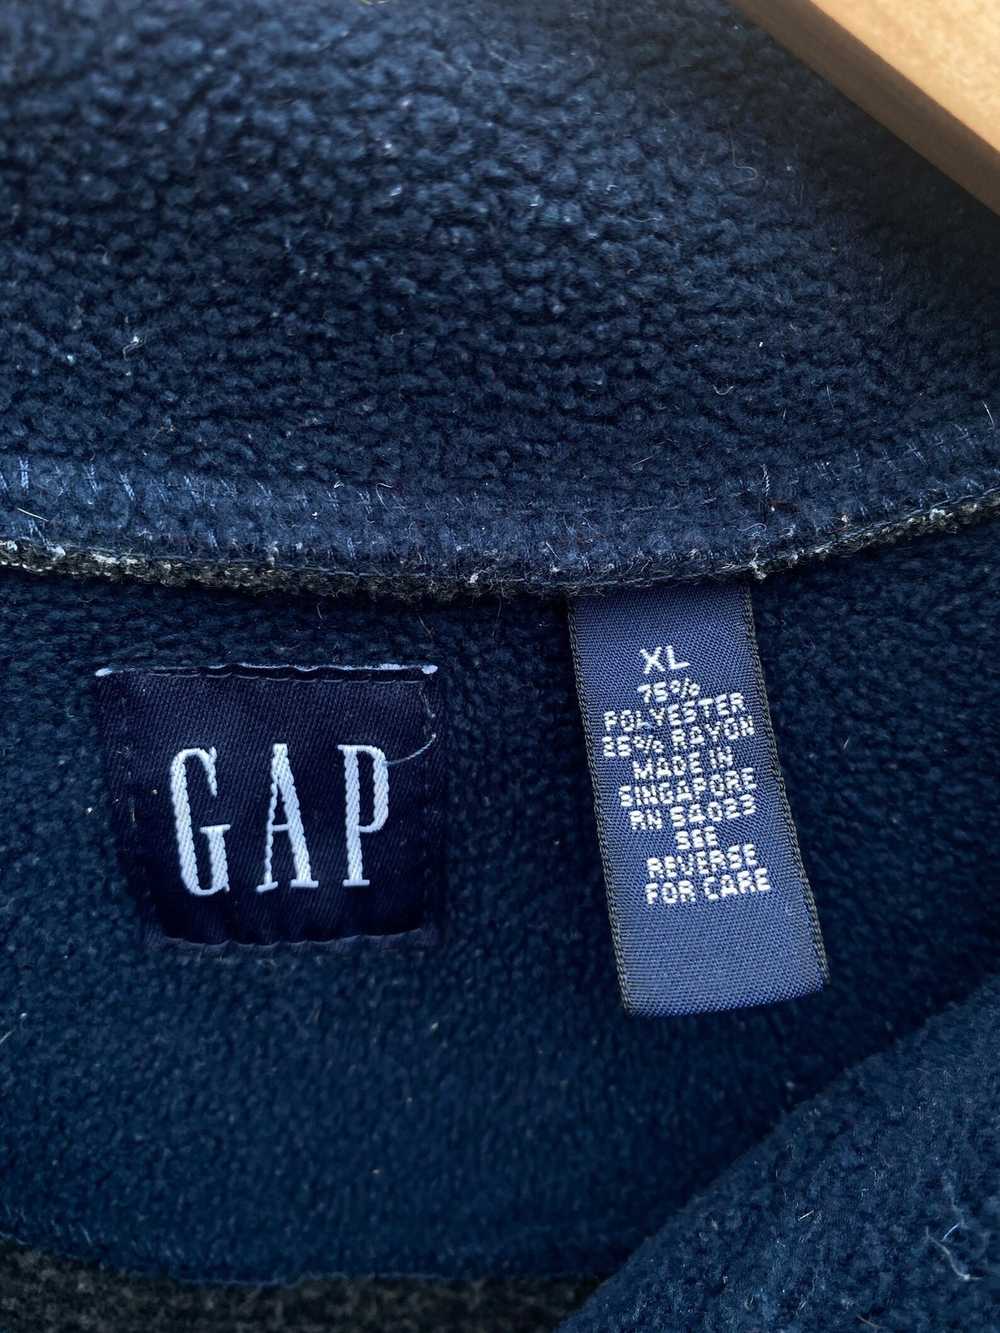 Gap Vintage 1990s GAP Quarter Zip Fleece Sweatshi… - image 3